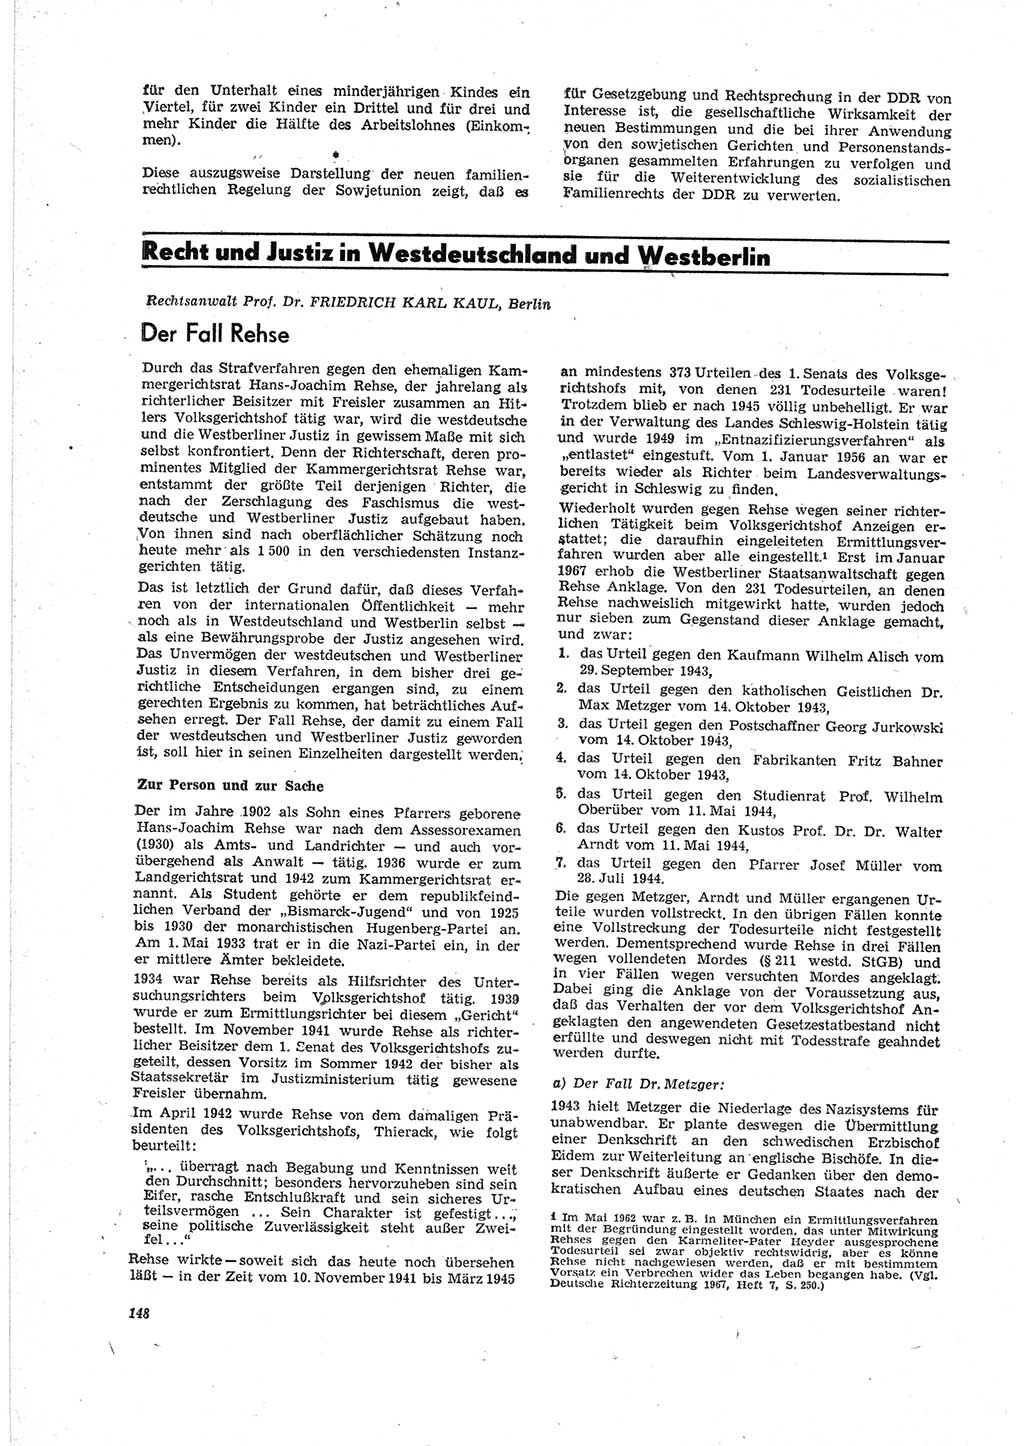 Neue Justiz (NJ), Zeitschrift für Recht und Rechtswissenschaft [Deutsche Demokratische Republik (DDR)], 23. Jahrgang 1969, Seite 148 (NJ DDR 1969, S. 148)